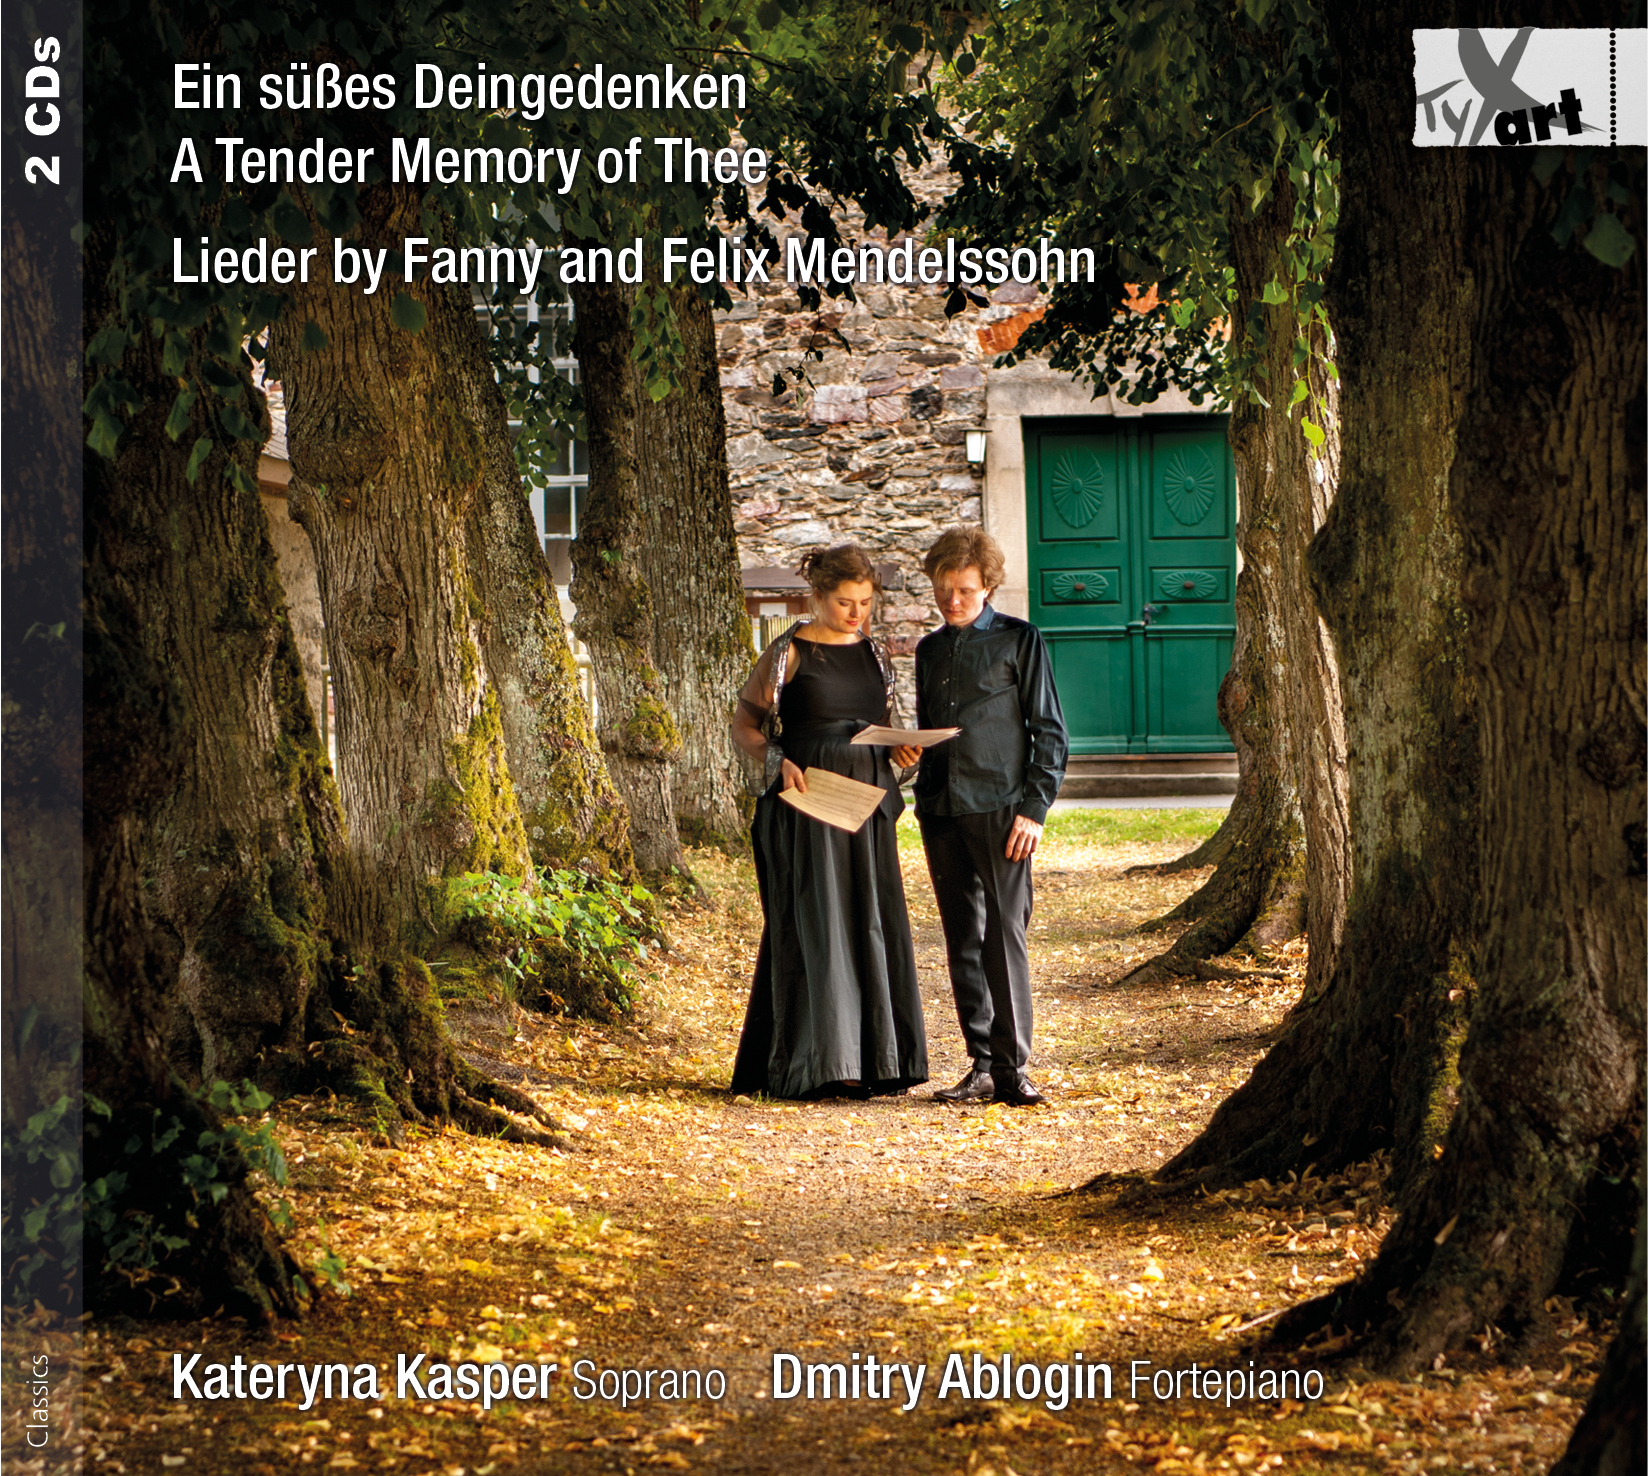 Ein süßes Deingedenken ... Lieder von Fanny und Felix Mendelssohn - Kateryna Kasper und Dmitry Ablogin